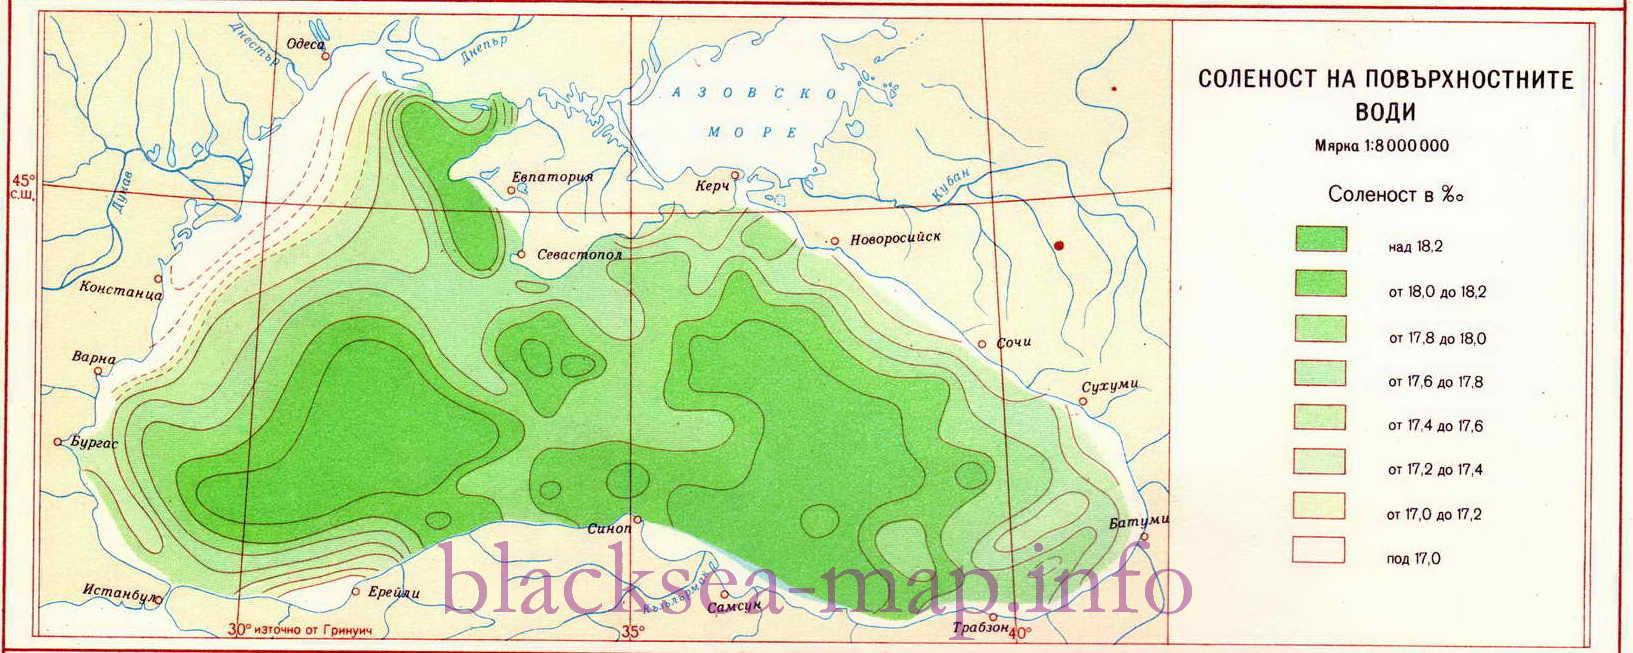 Карта солености воды в Черном море. Подробная карта солености воды на поверхности Черного моря, A0 - 